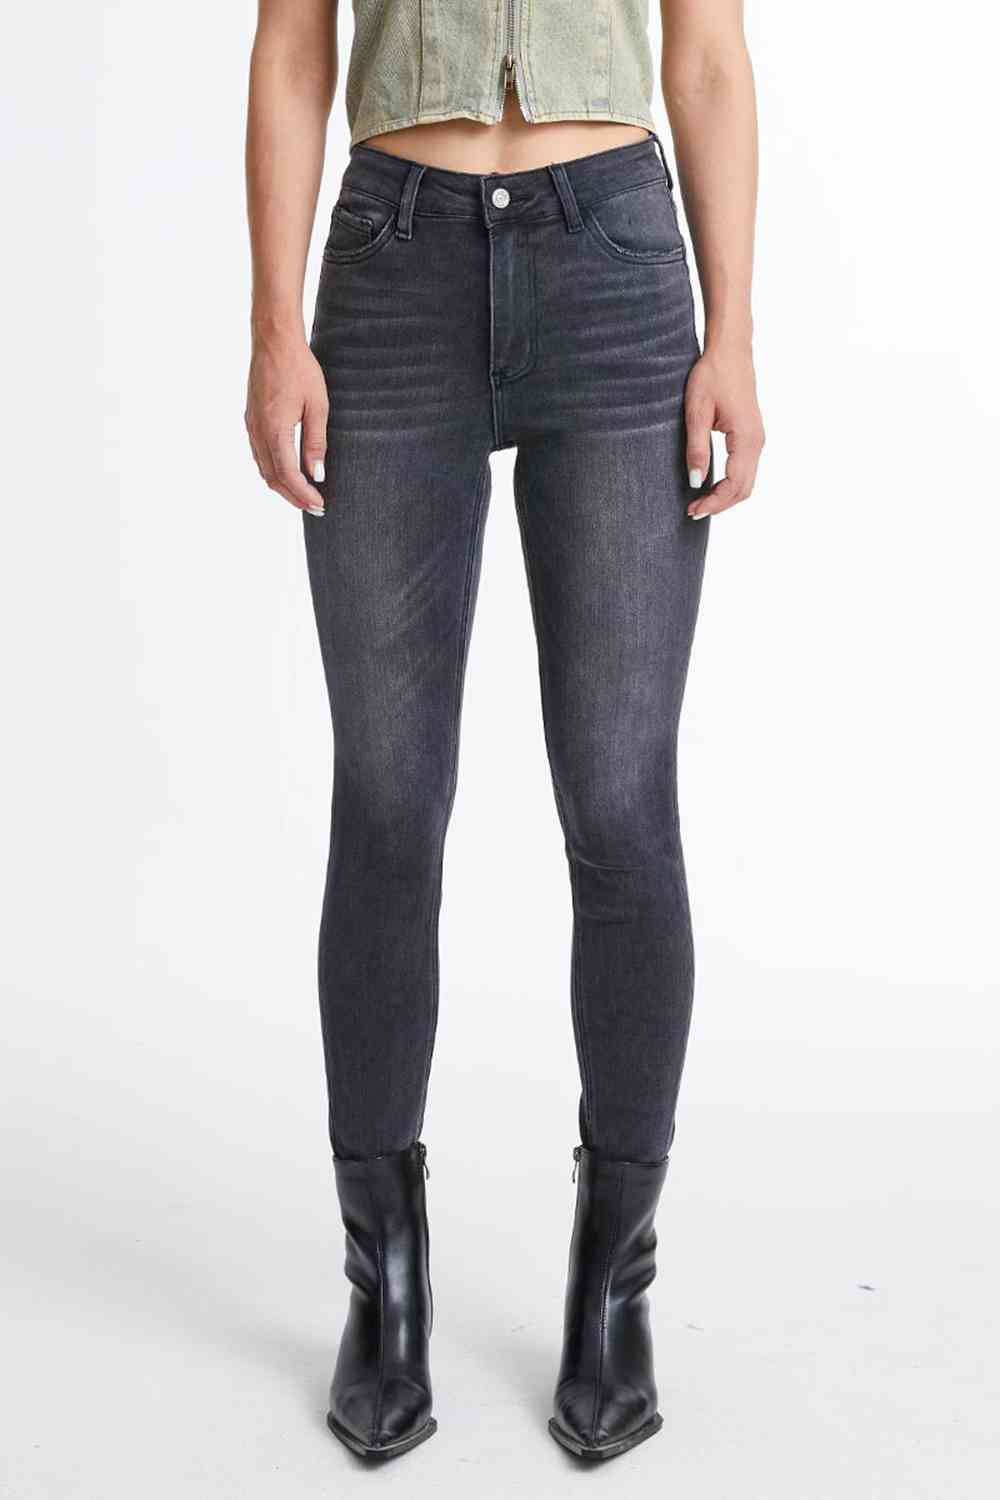 BAYEAS Cropped Skinny Jeans jeans jehouze Dark 0(24) 